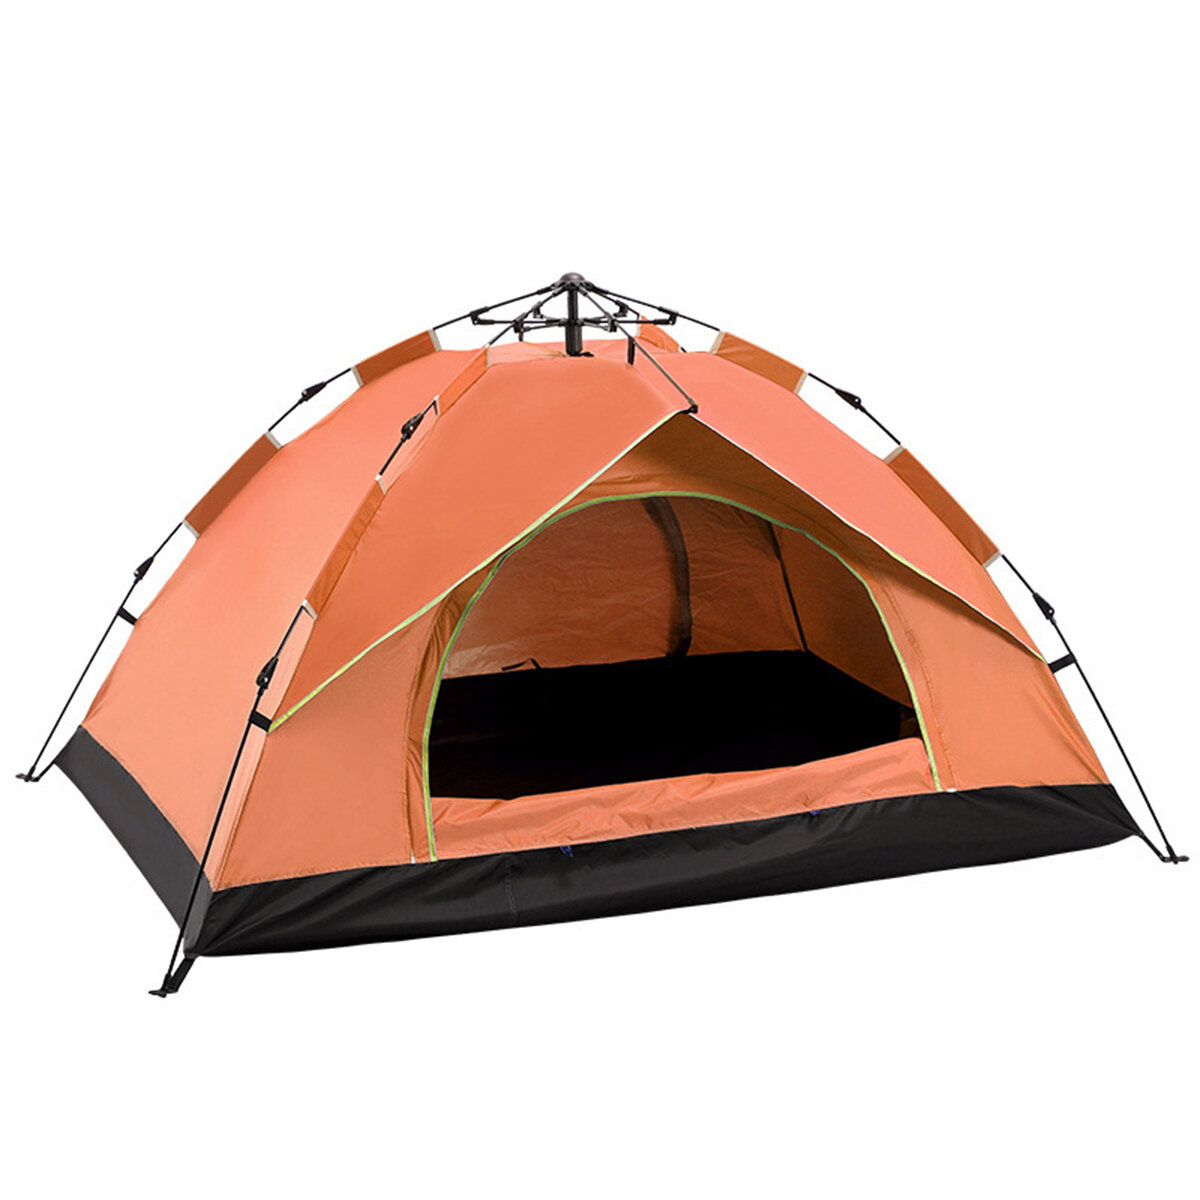 Автоматический быстроразборный палаточный домик для 3-4 человек, предназначенный для отдыха на природе, защищает от УФ-излучения и воды.